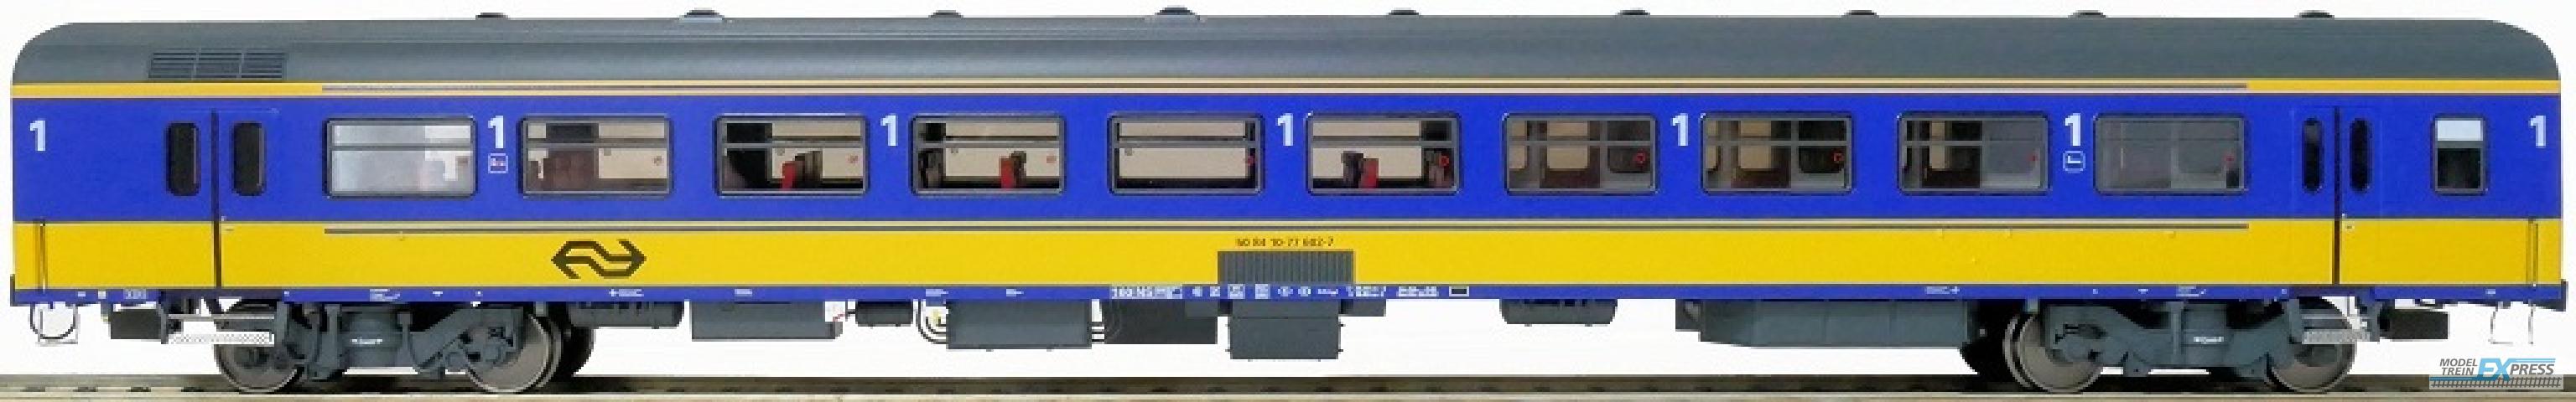 Exact-train 11042 NS ICR (Originalversion) für den Inlandseinsatz Reisezugwagen A (Farbe Gelb / Blau), Ep. IV